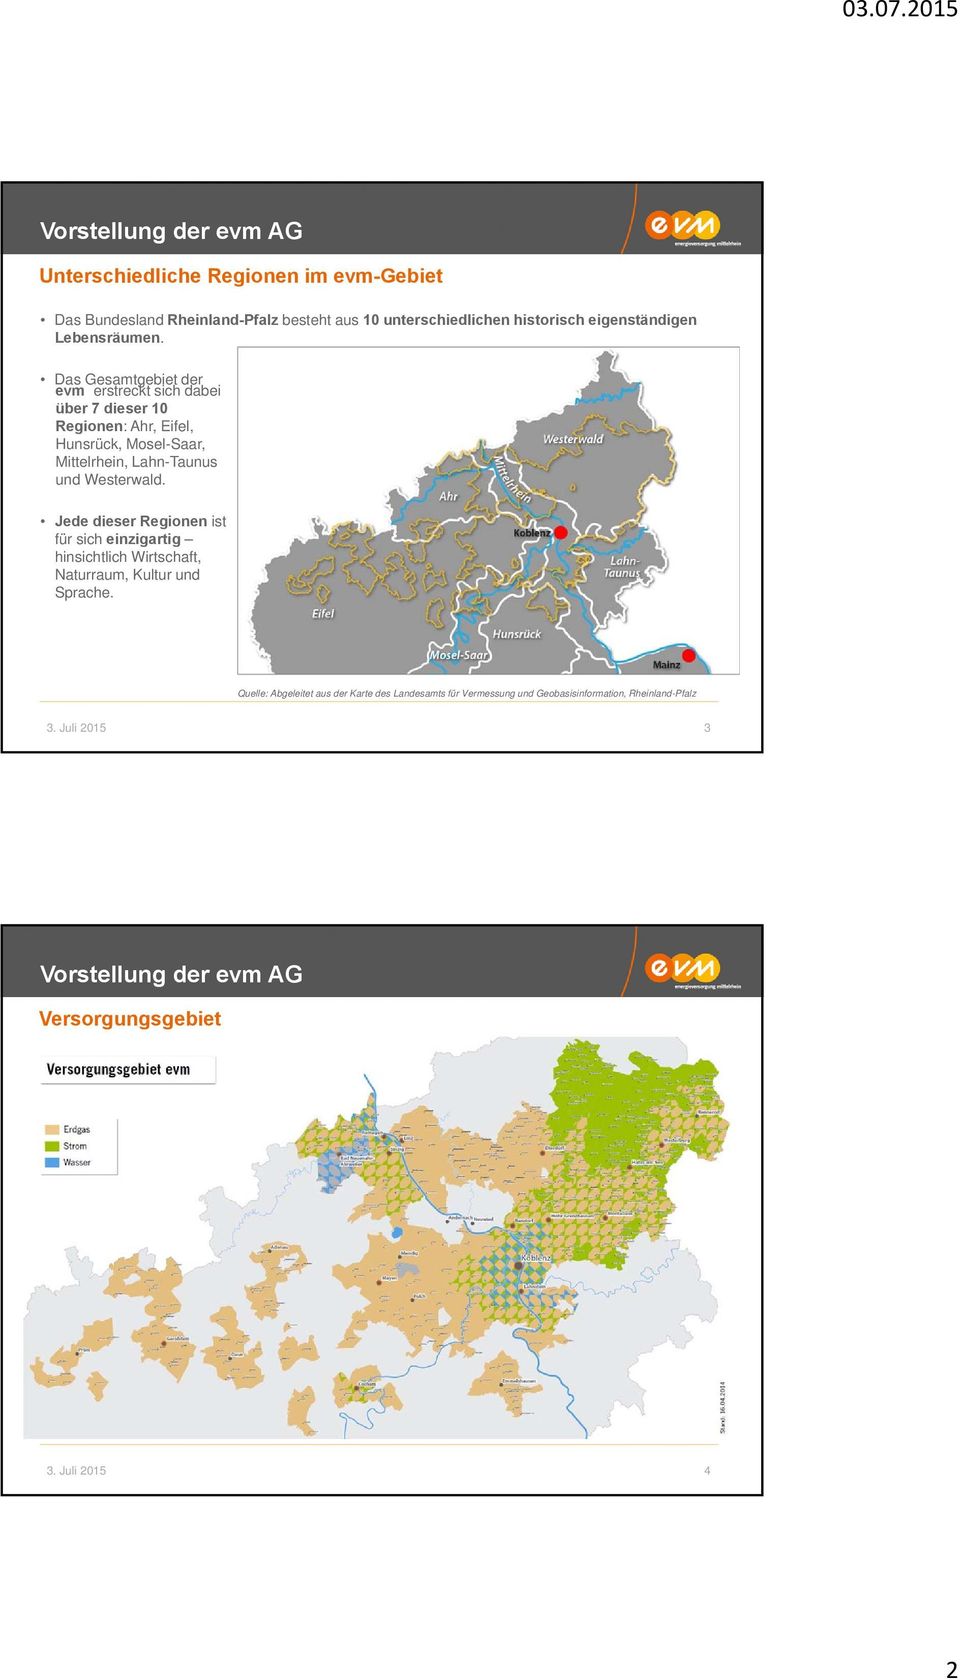 Das Gesamtgebiet der evm erstreckt sich dabei über 7 dieser 10 Regionen: Ahr, Eifel, Hunsrück, Mosel-Saar, Mittelrhein, Lahn-Taunus und Westerwald.